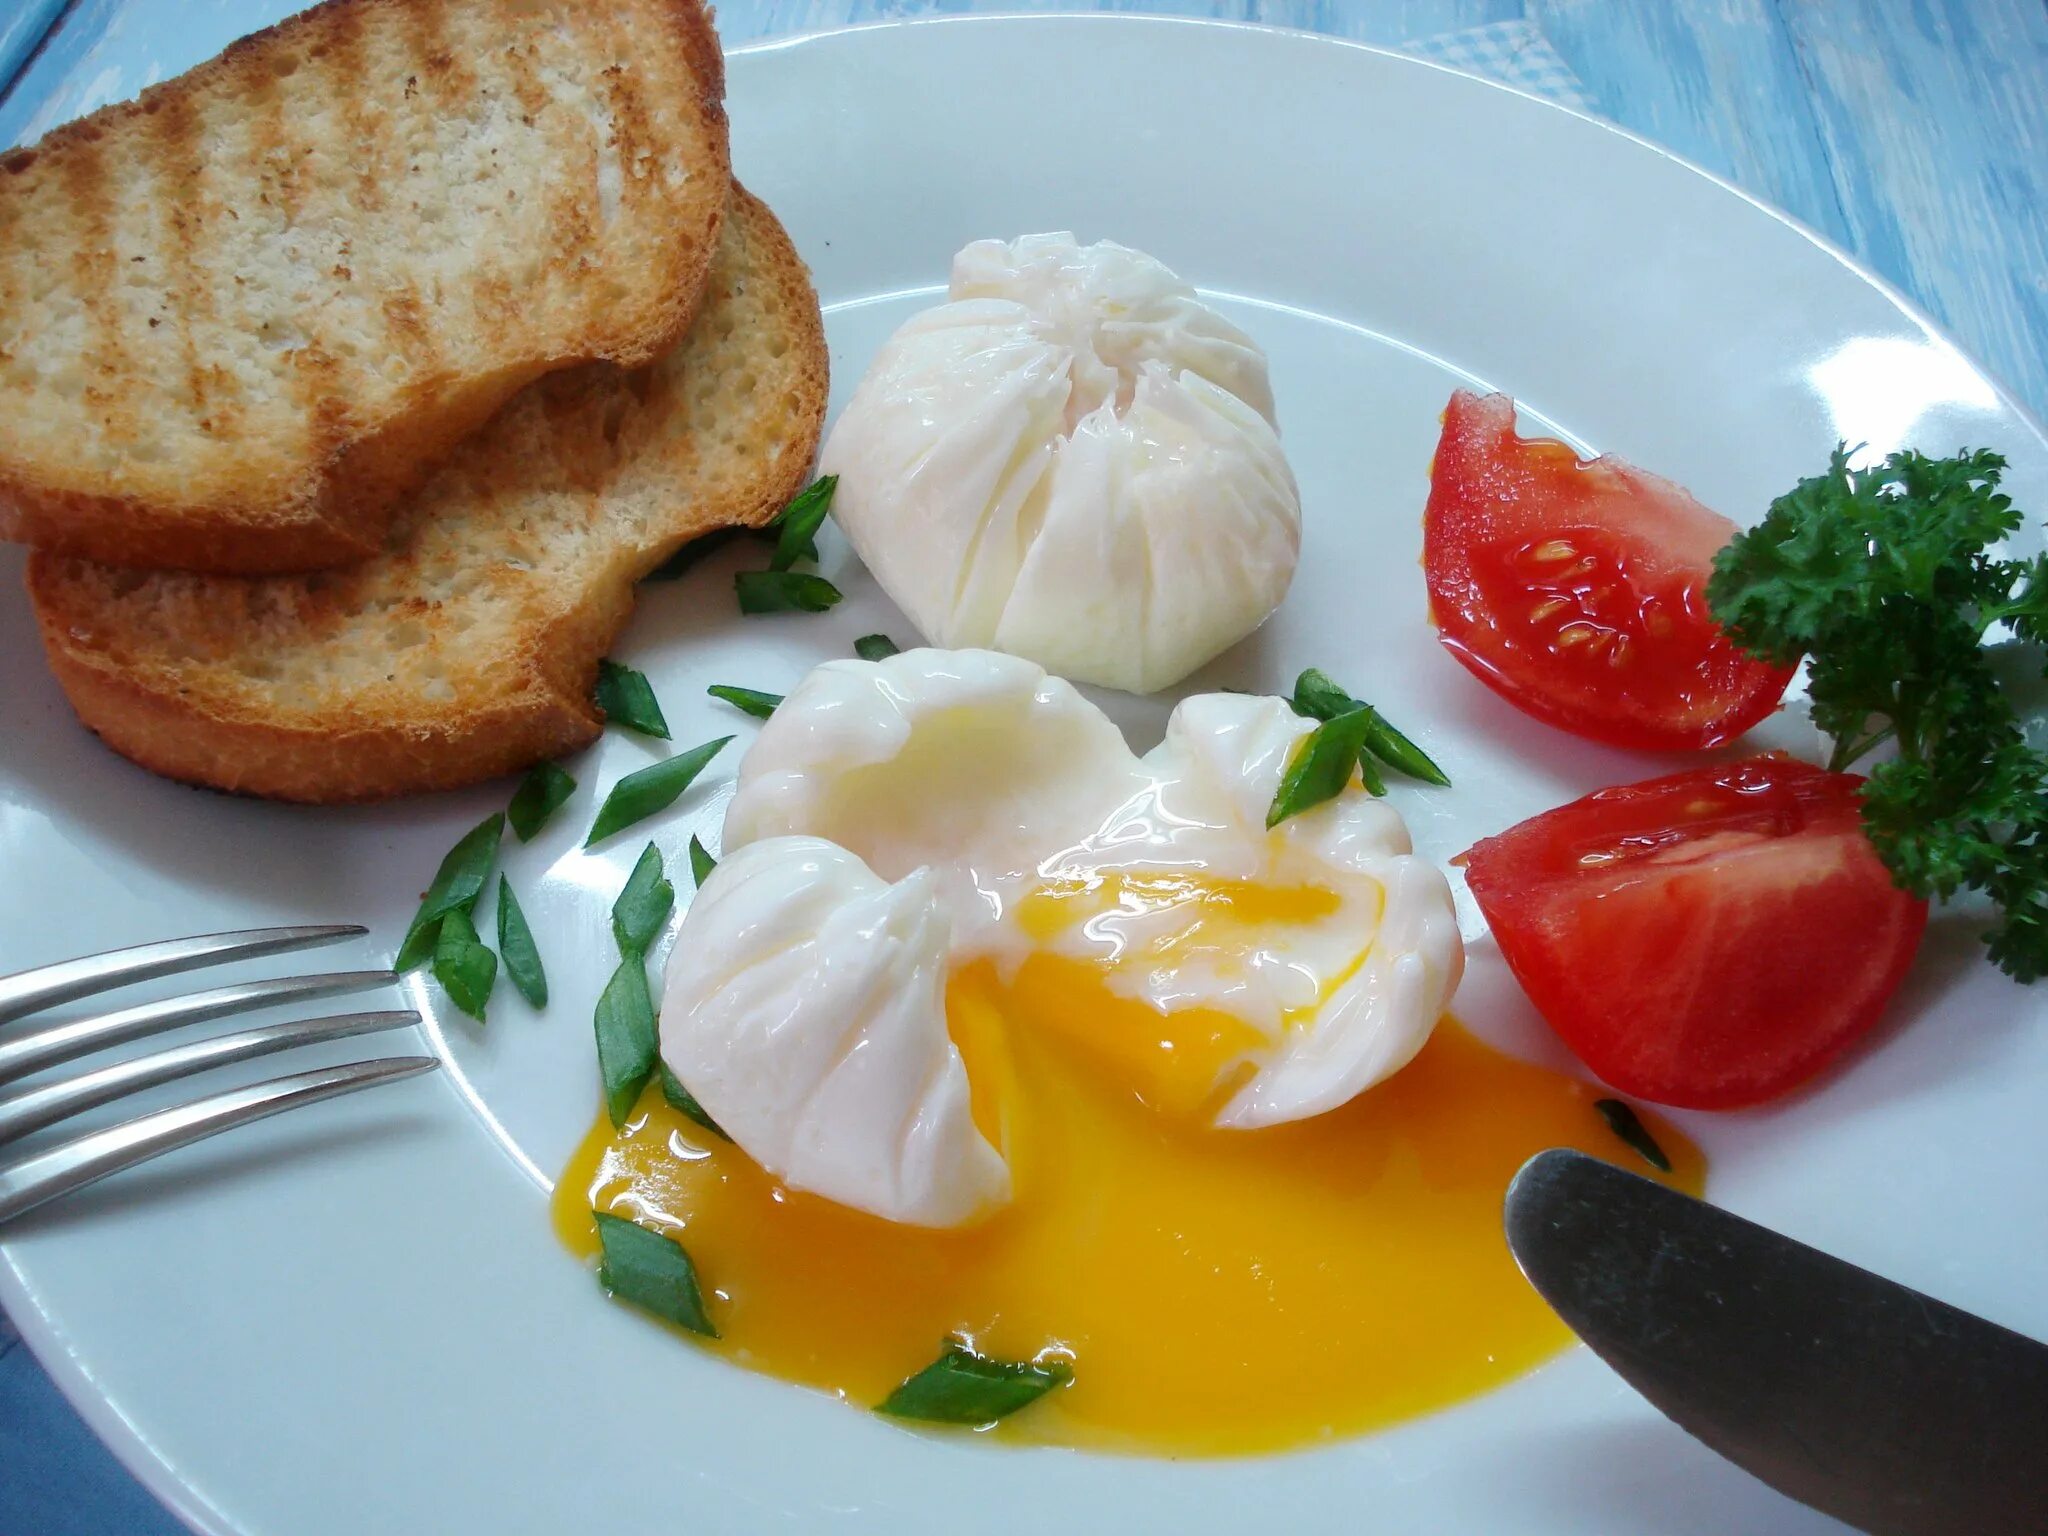 Пашот сколько минут. Яйцо пашот в мешочке. Яйца пашот всмятку. Завтрак с яйцом пашот. Яйцо пашот Эстетика.